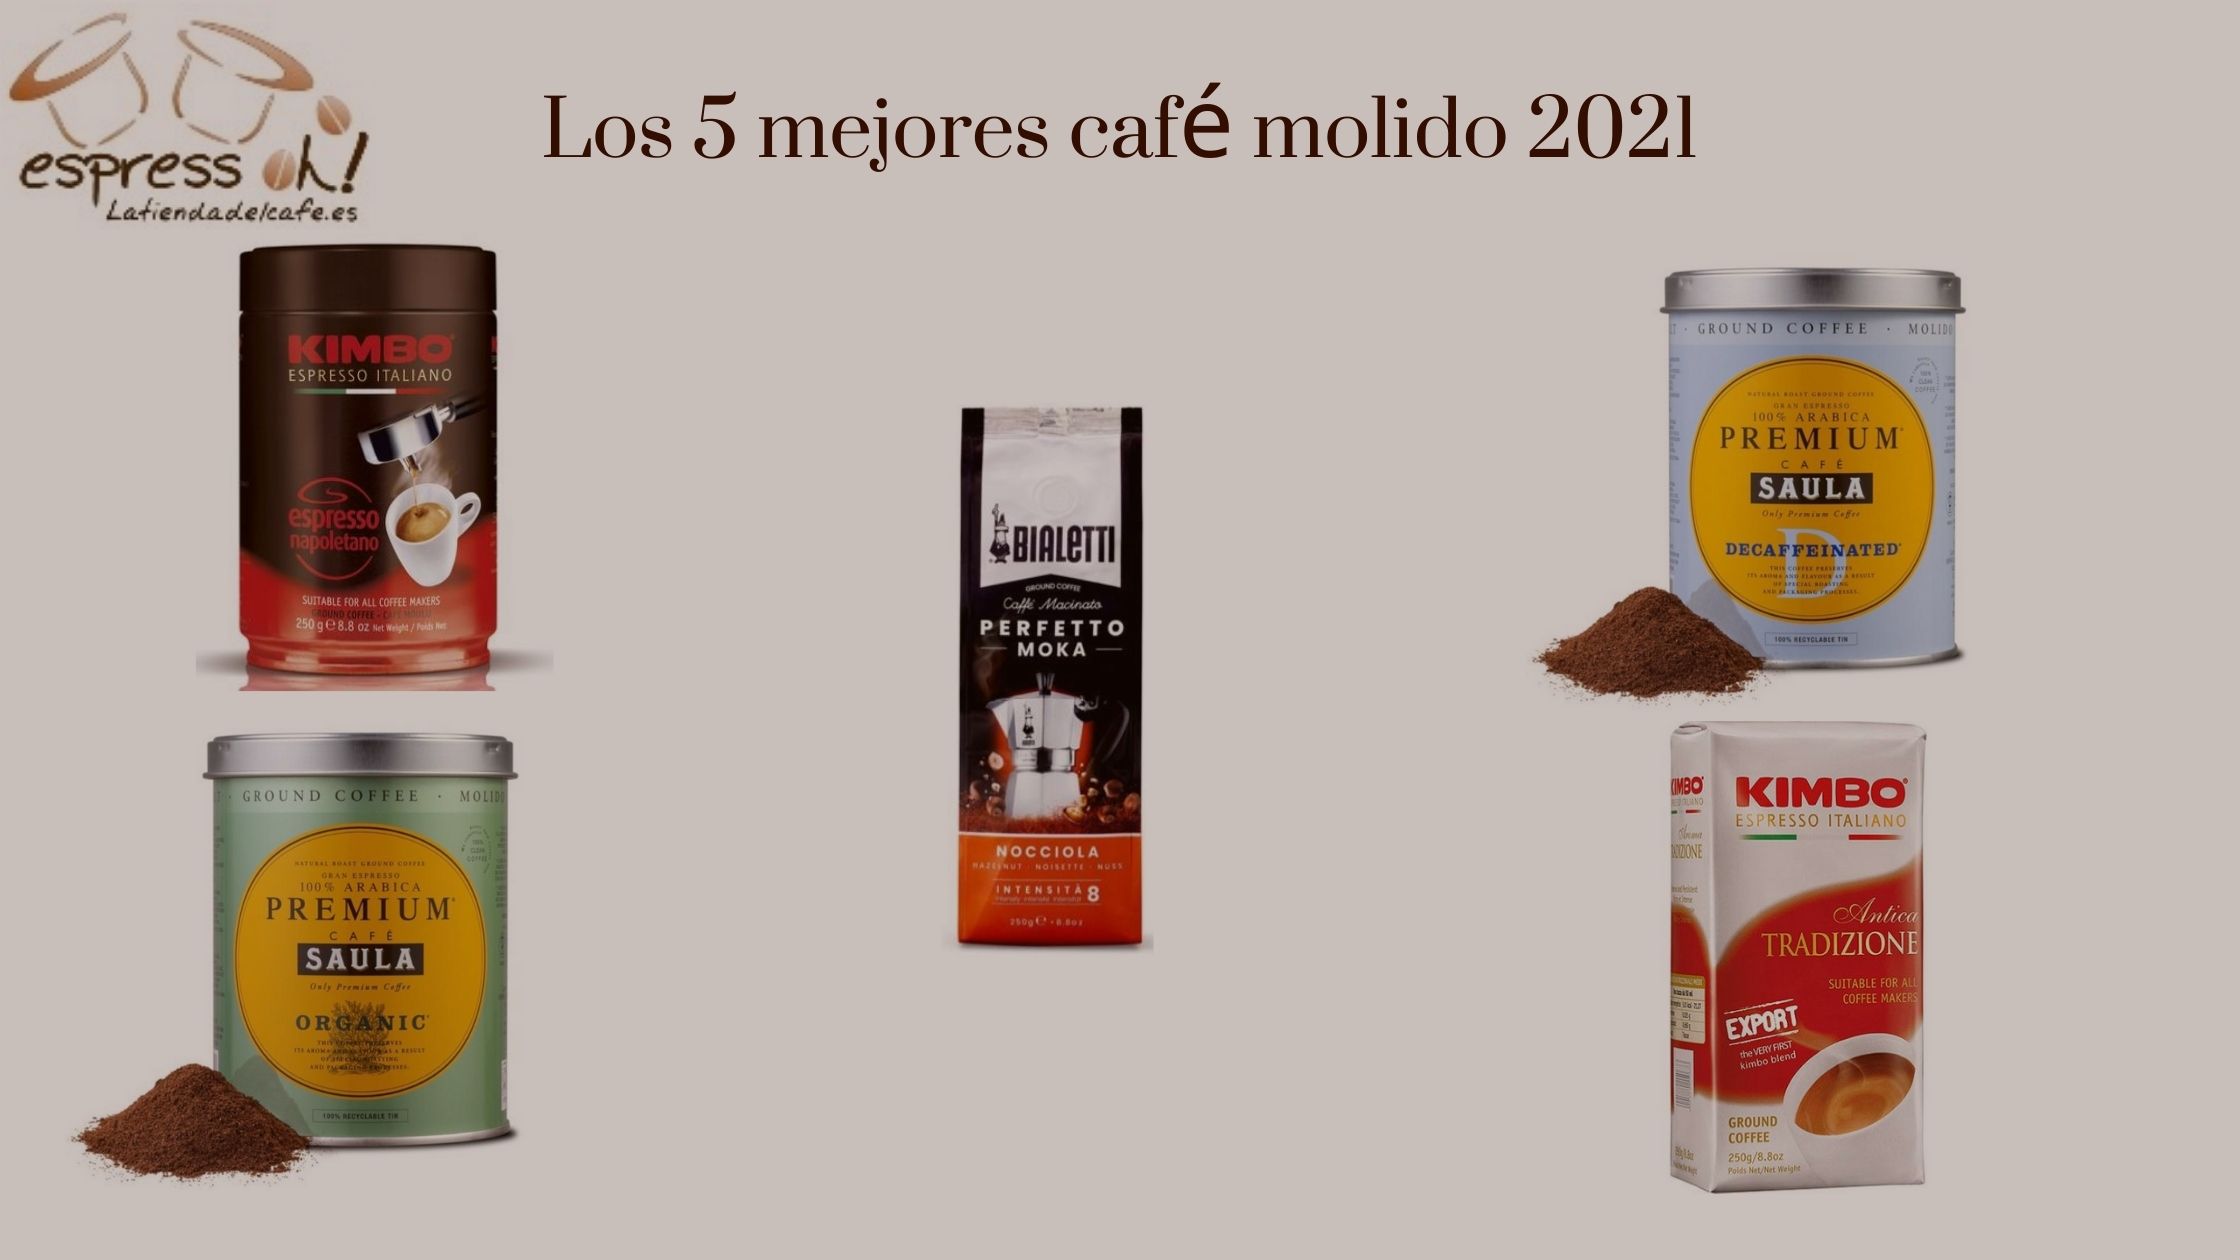 Premium café molido natural arábica - Saula - 250 g